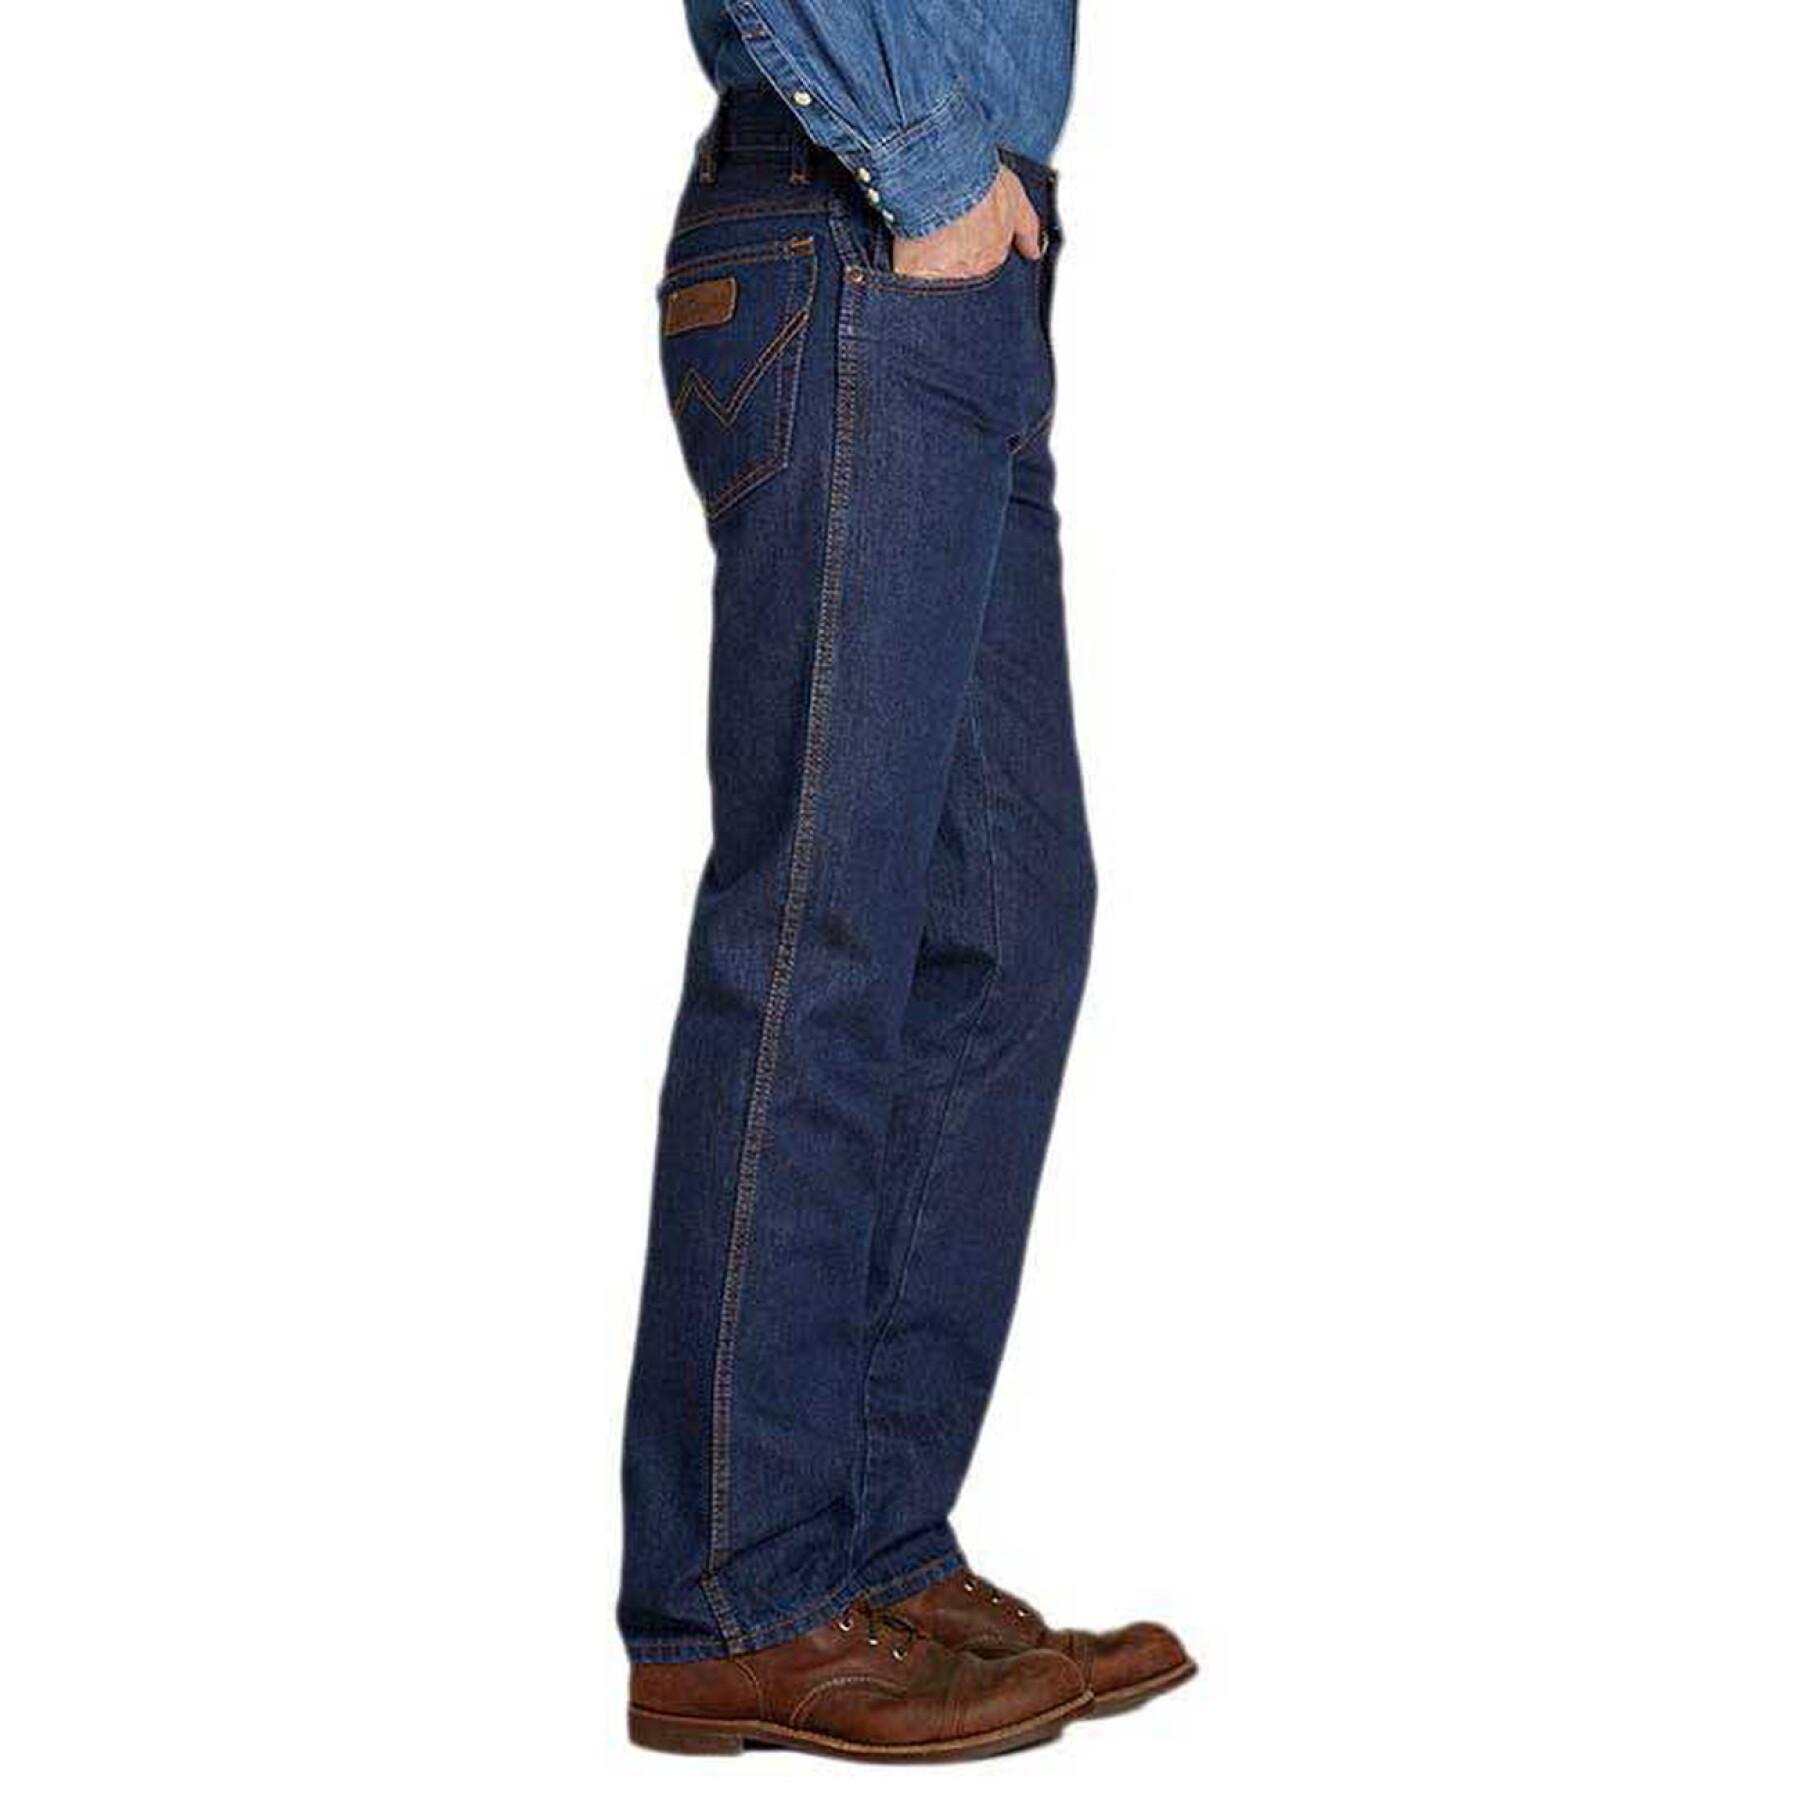 Jeans Wrangler texas stretch darkstone